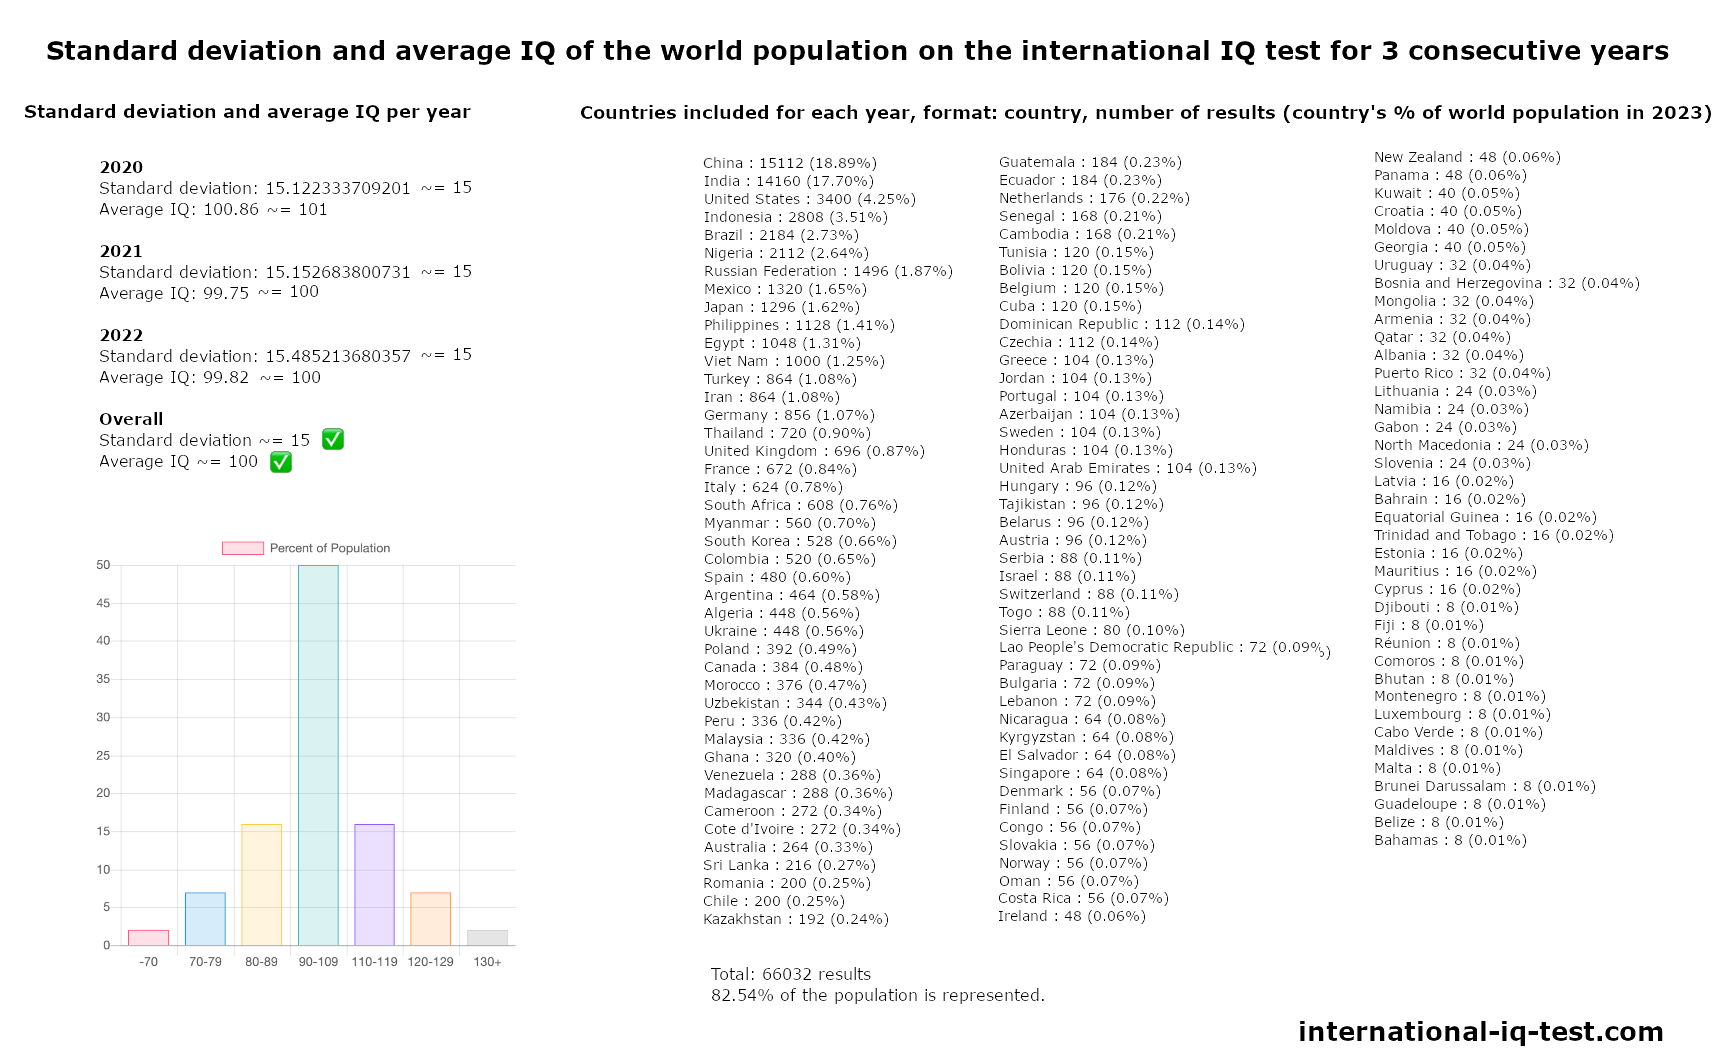 Pasaules iedzīvotāju standartnovirze un vidējais IQ starptautiskajā IQ testā 2020., 2021. un 2022. gadā